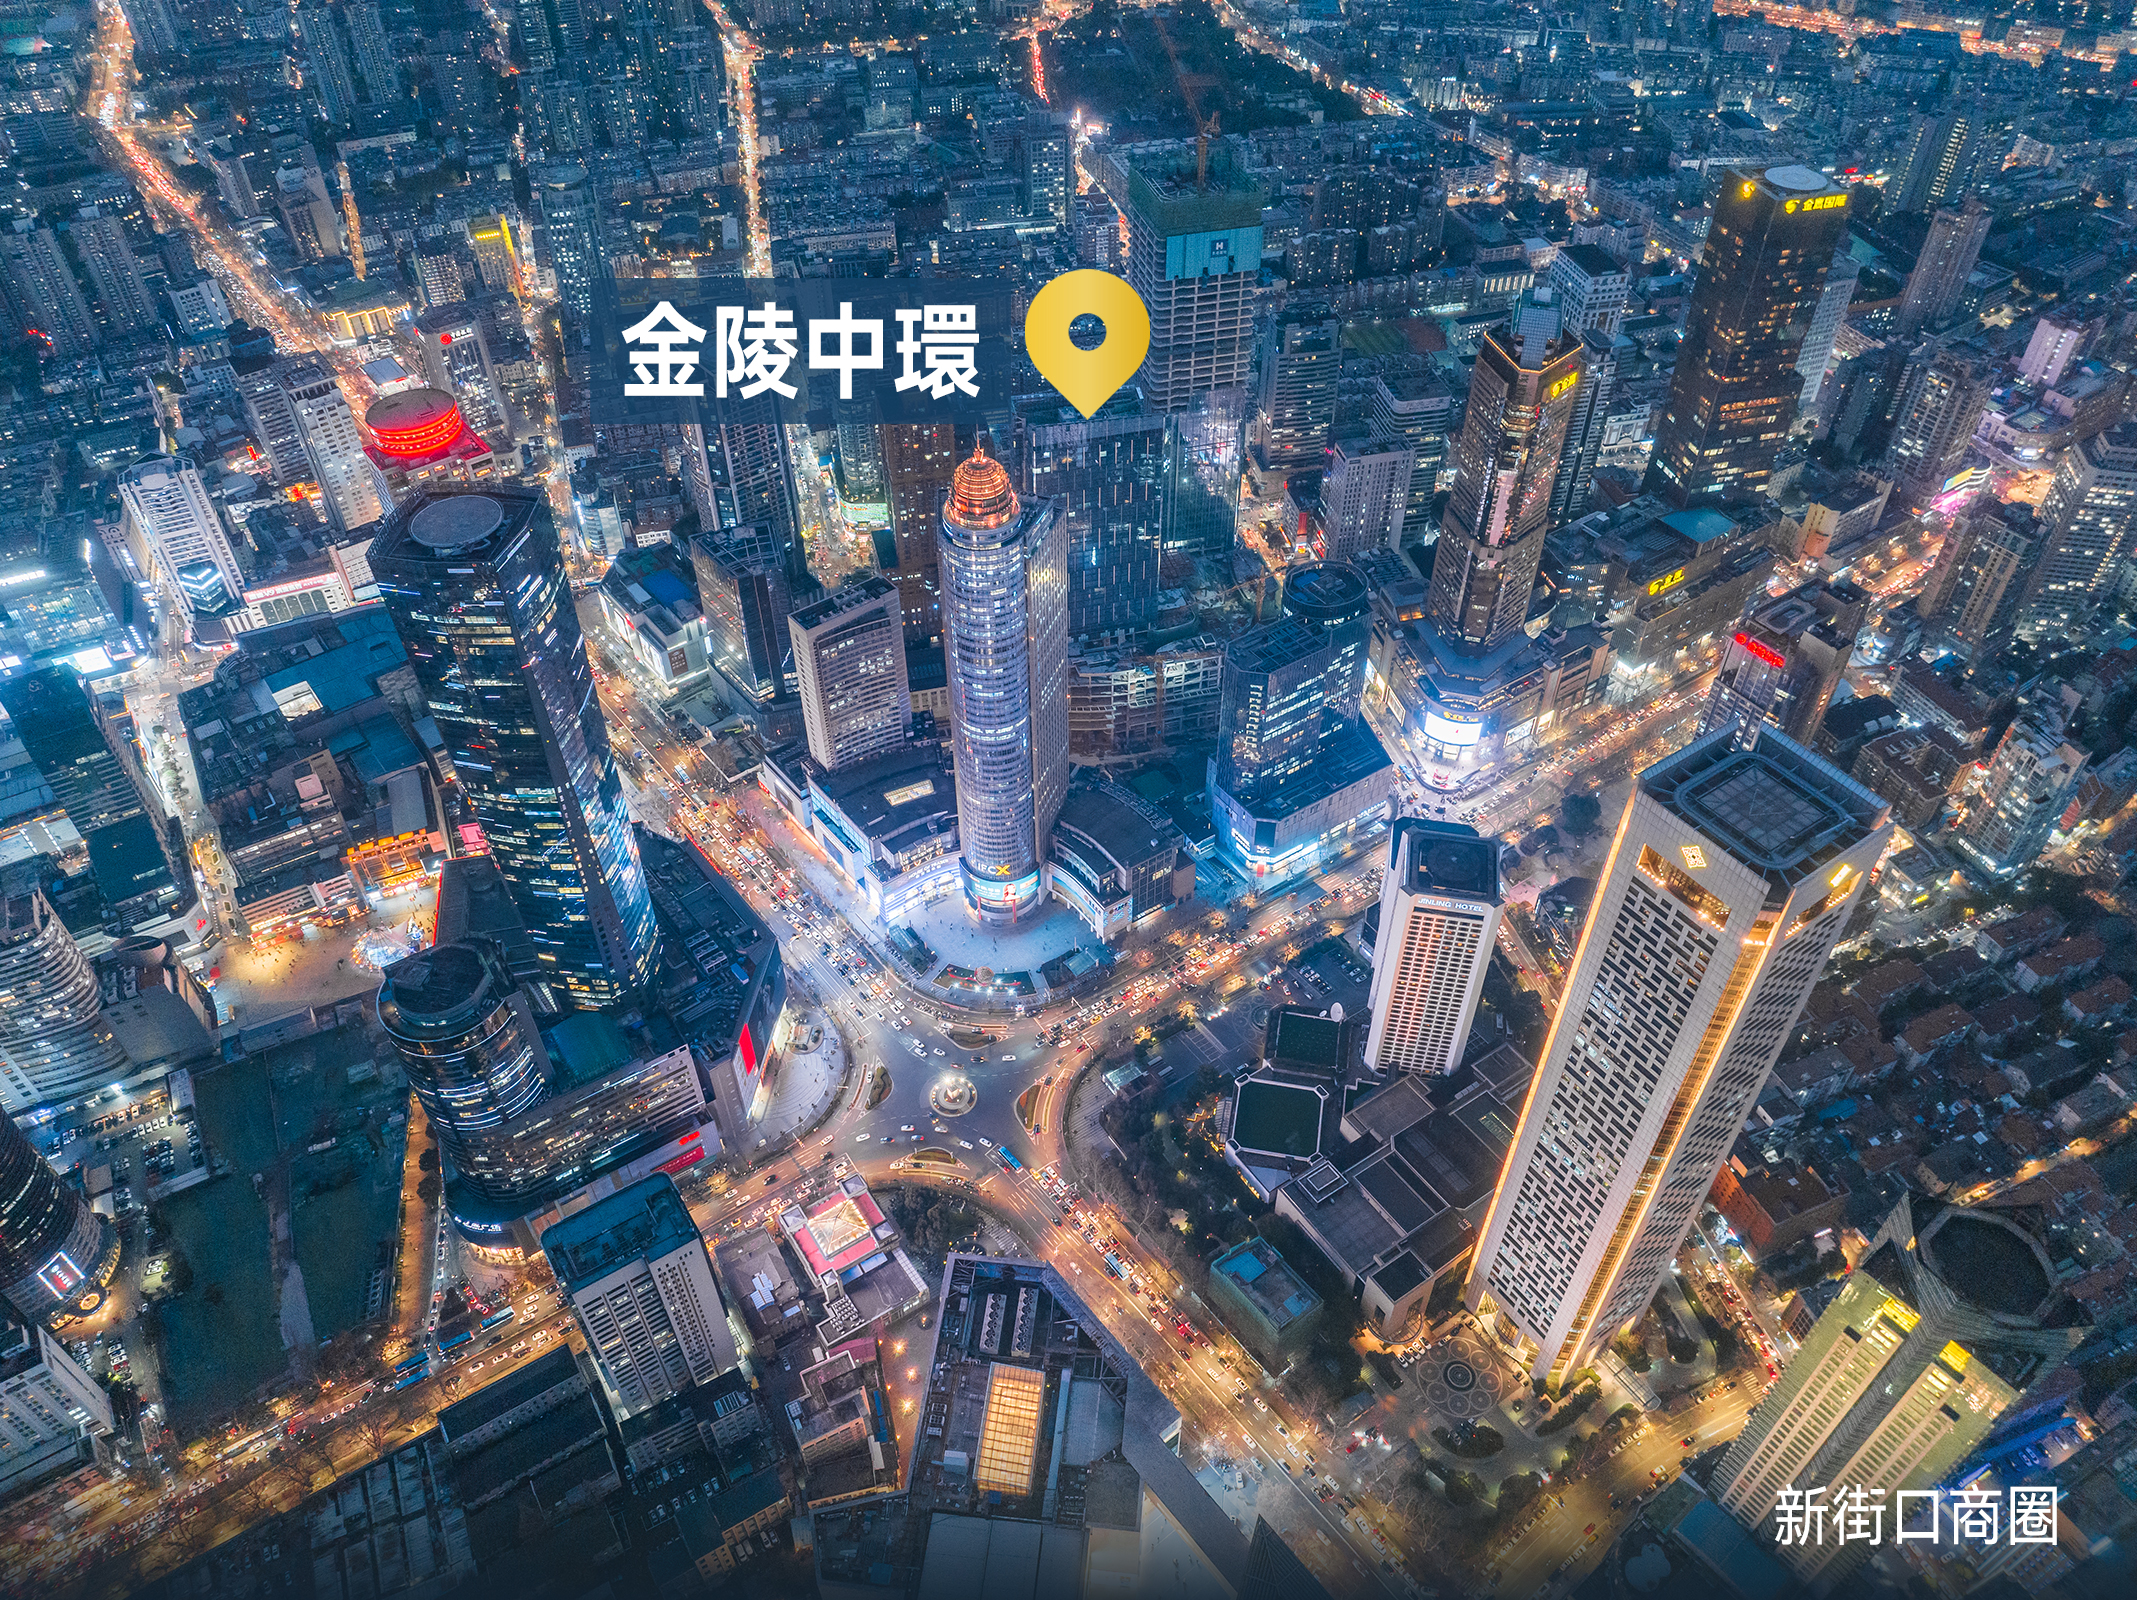 深度| 拥有134年历史的商业操盘手将如何更新南京新街口？ – 华丽志 image